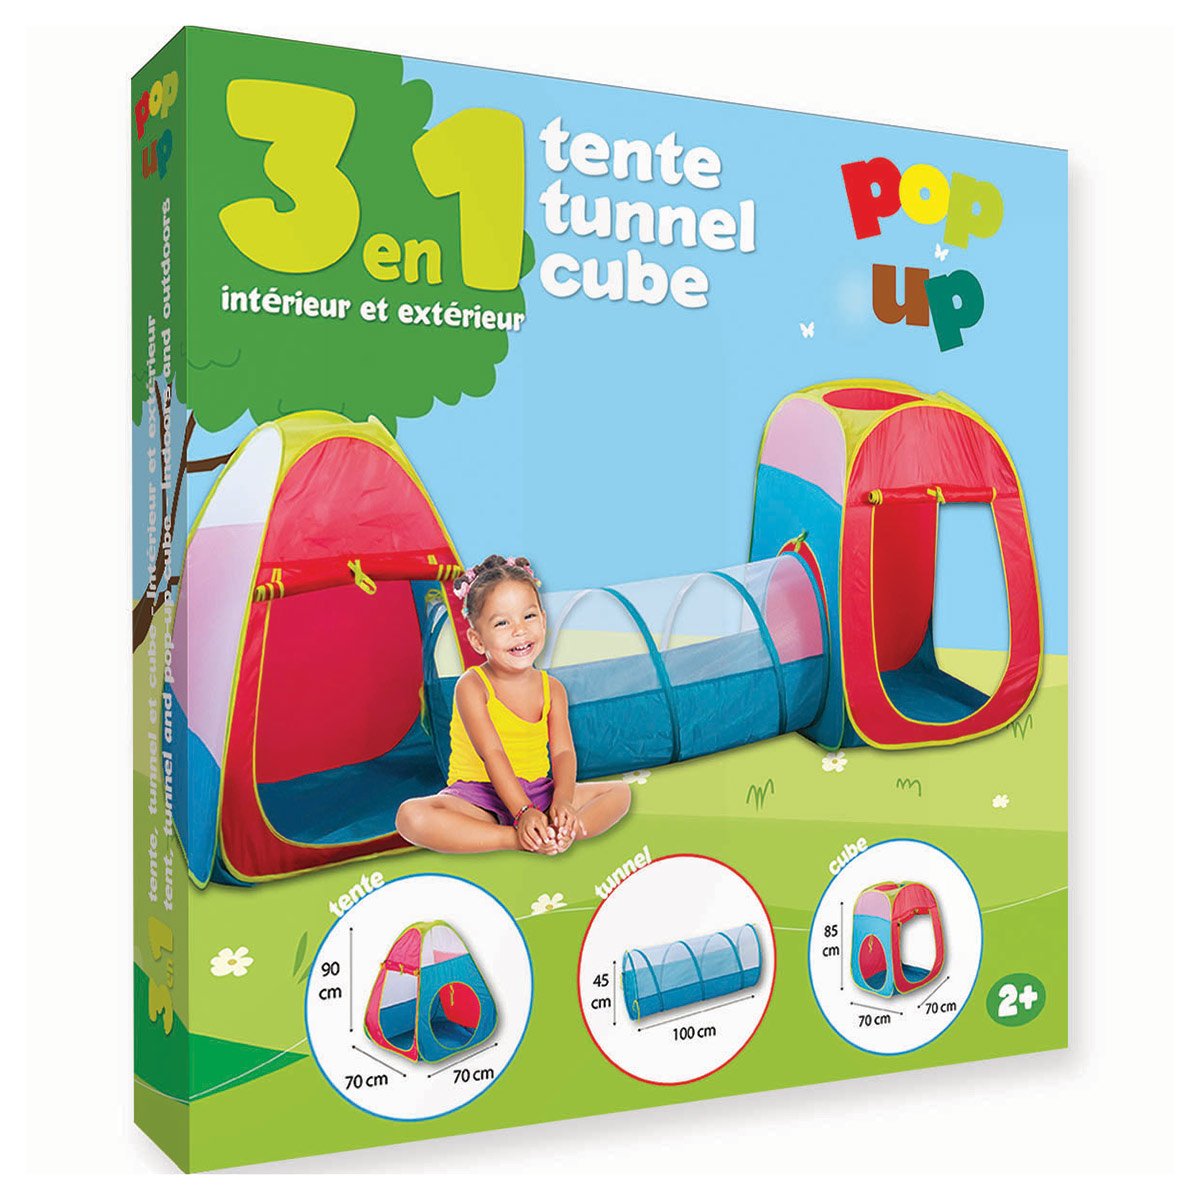 Tente tunnel et cub pop up - La Grande Récré